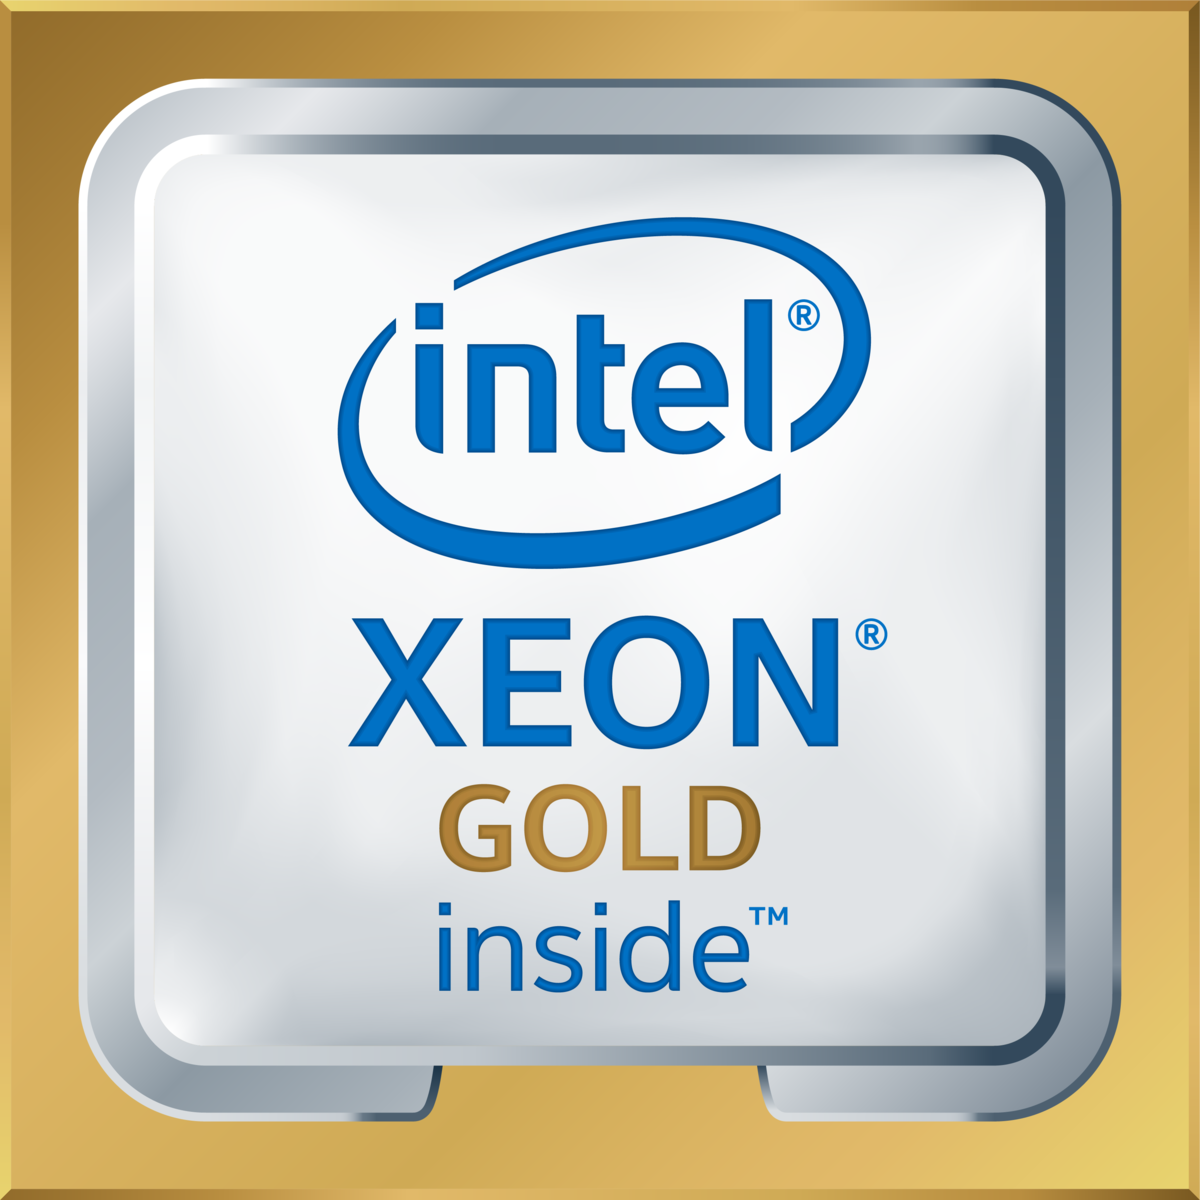 Intel(R) Xeon(R) Gold 6146 CPU @ 3.20GHz's logo